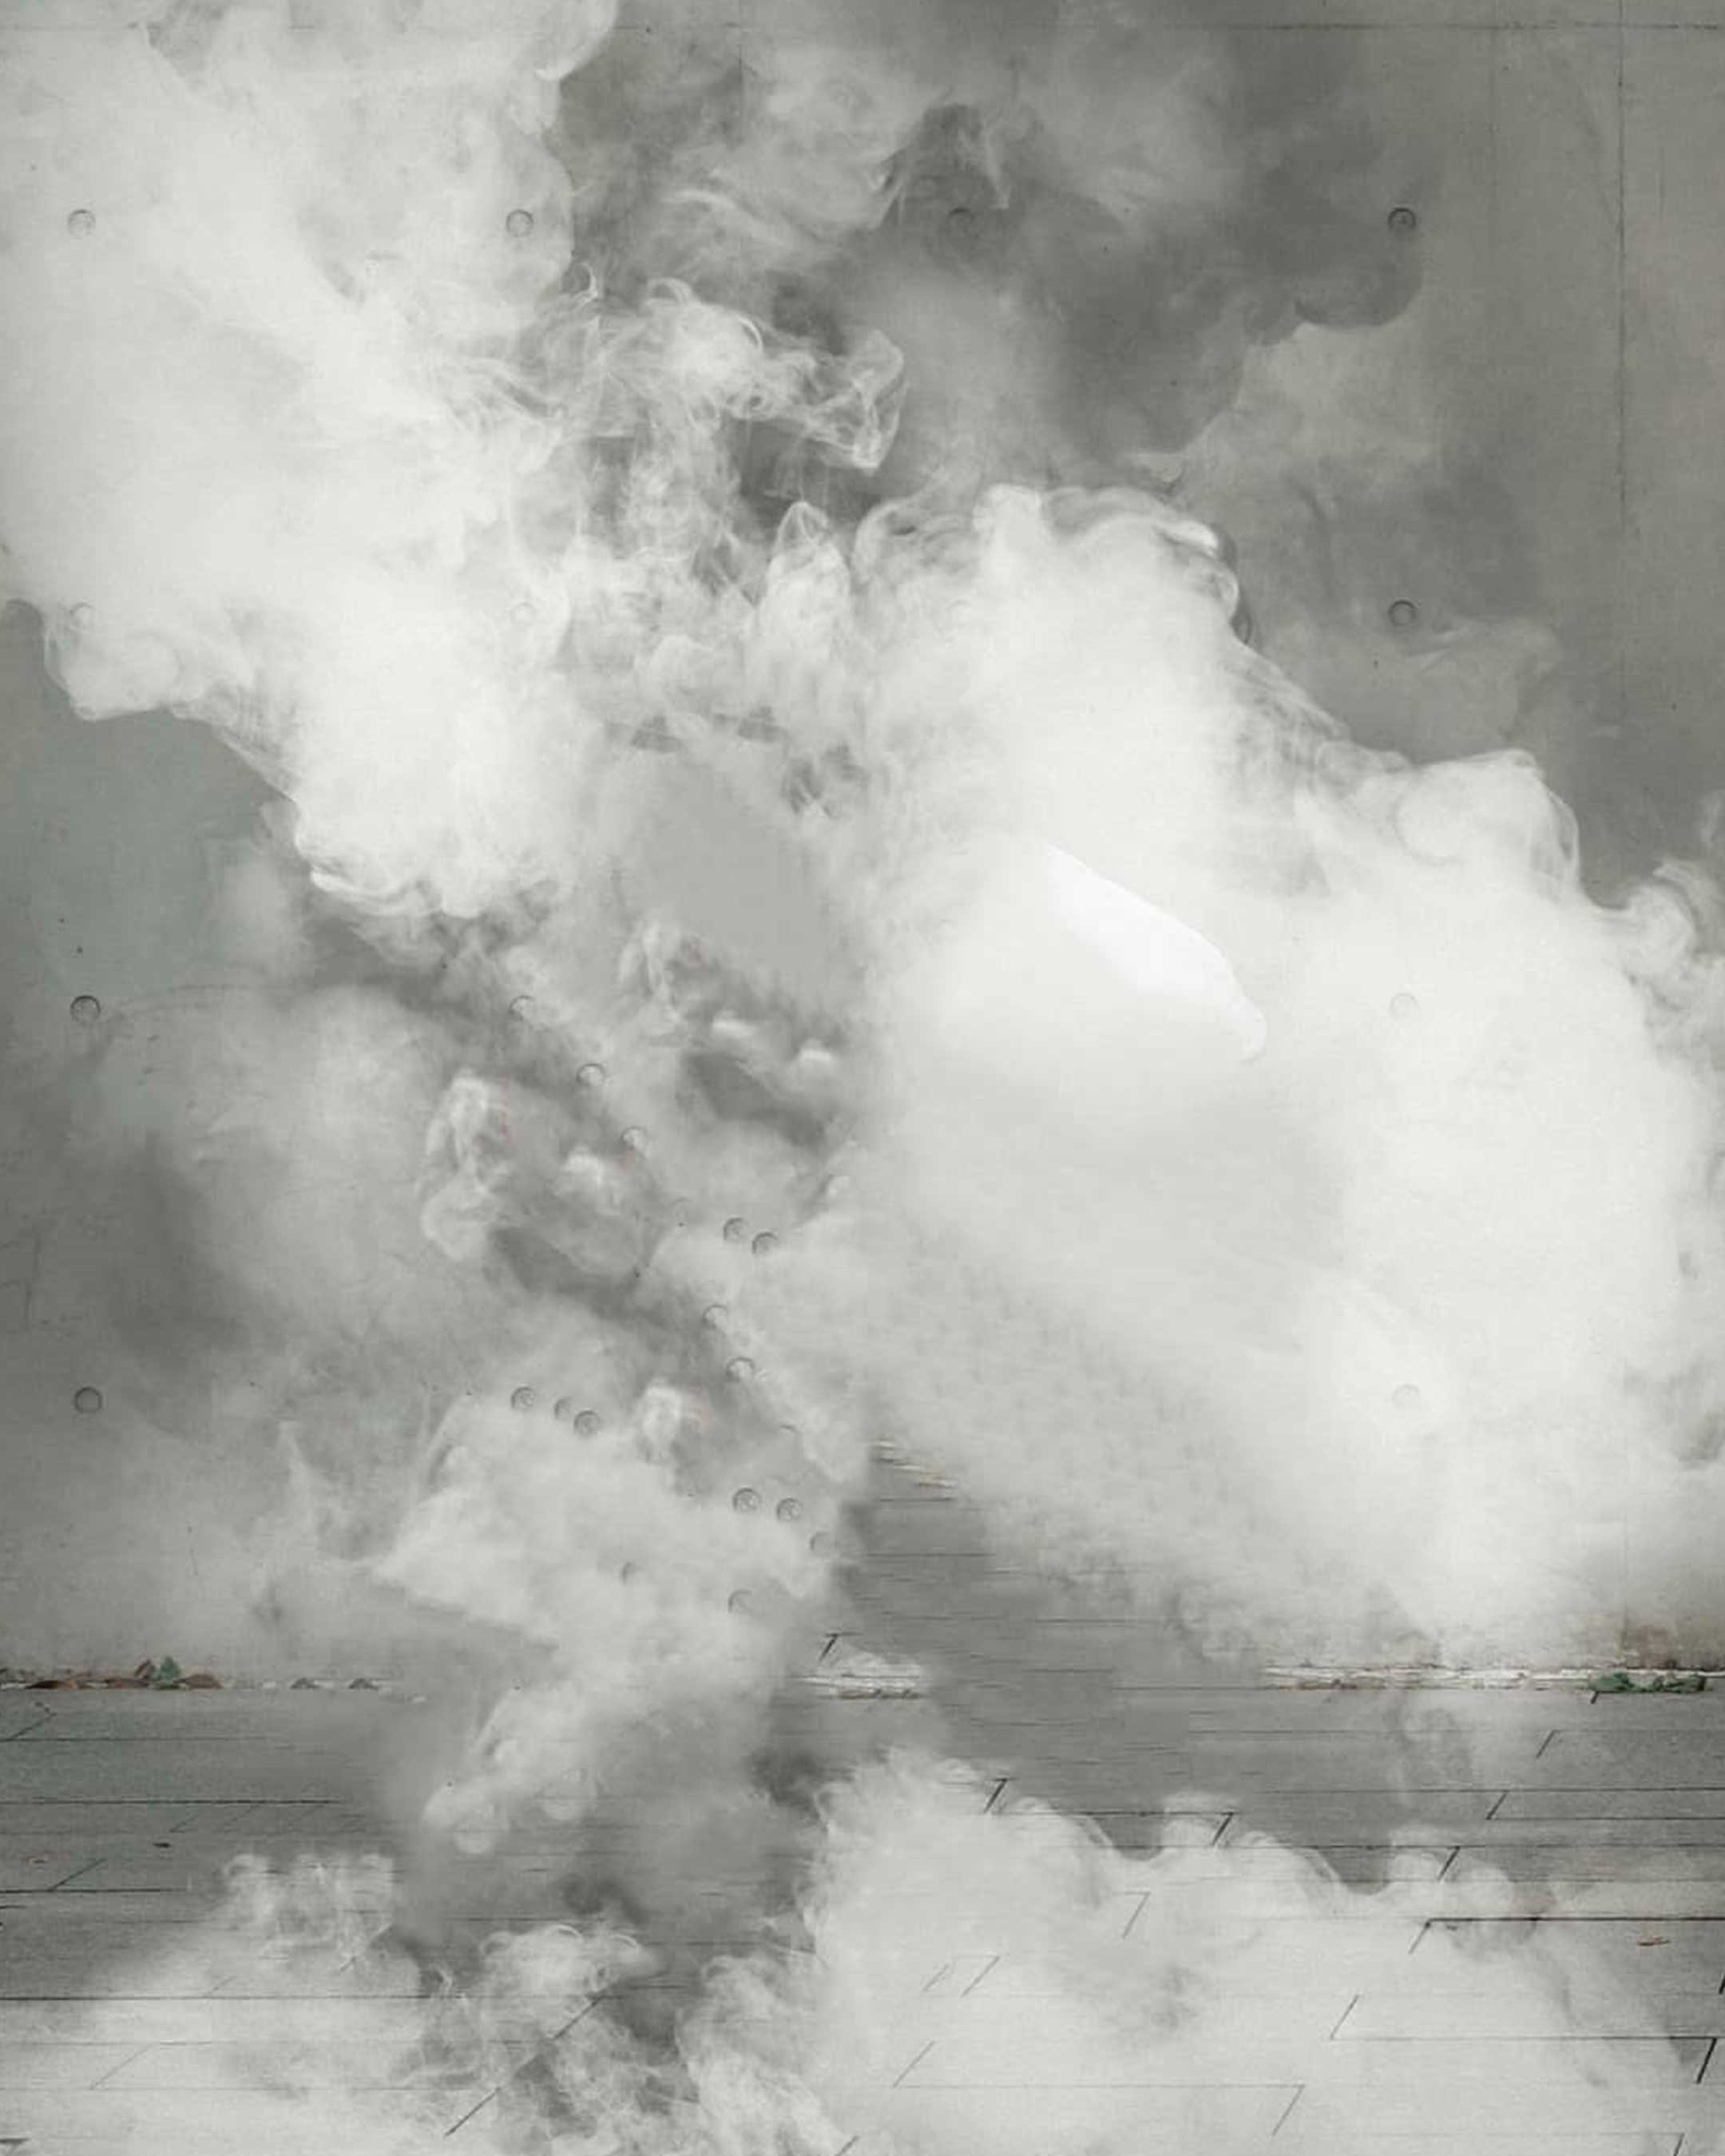 Smoke PicsArt Background Free Stock Image